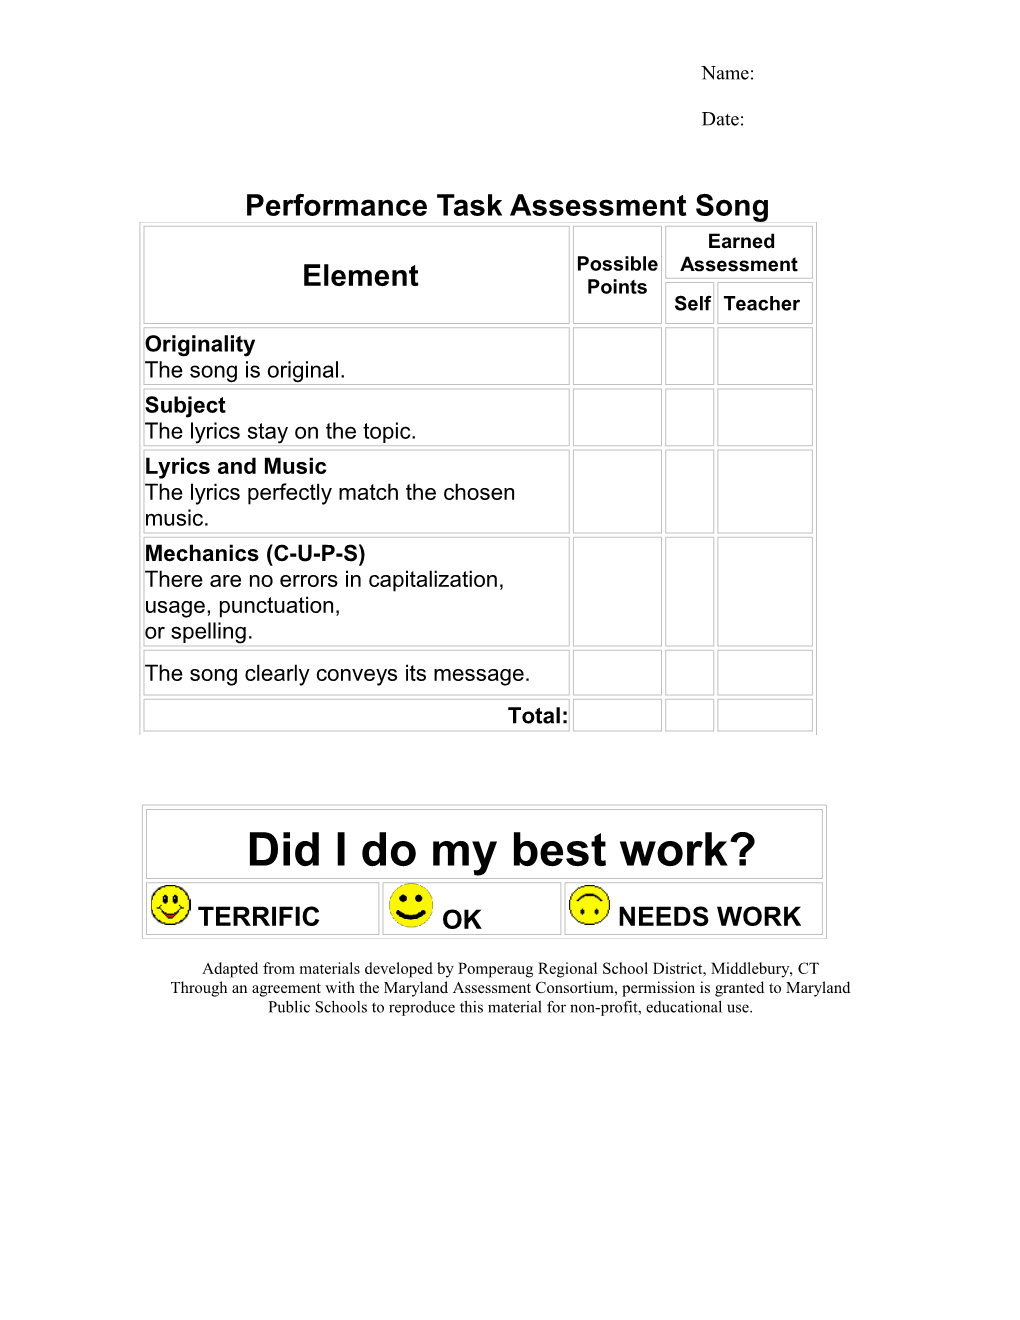 Performance Task Assessment Song